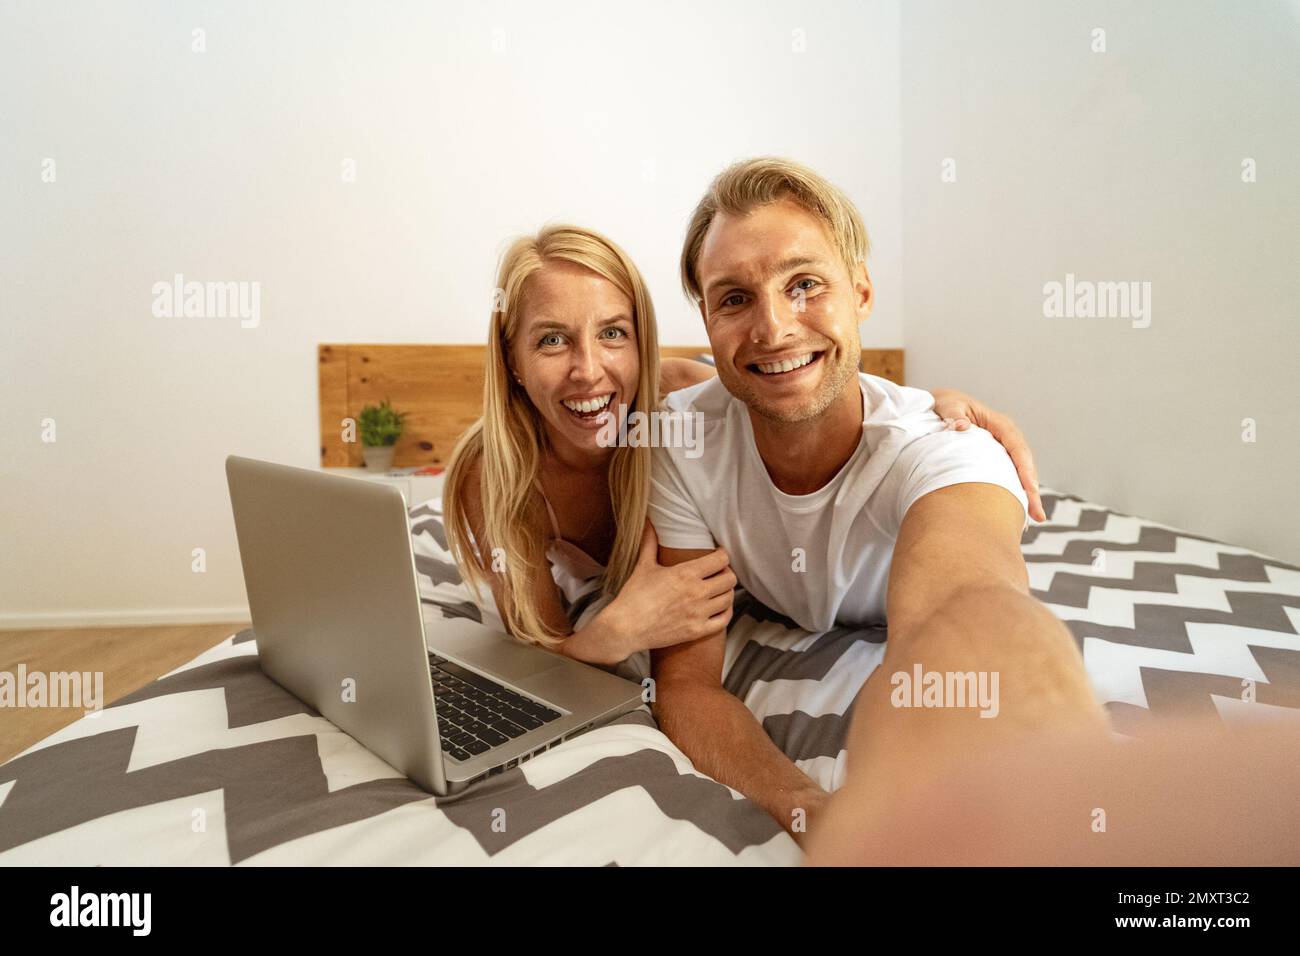 Glückliches junges Paar, das Spaß beim Selfie hat, während es ein Notebook im Bett benutzt - Liebes Beziehungs- und Technologiekonzept Stockfoto